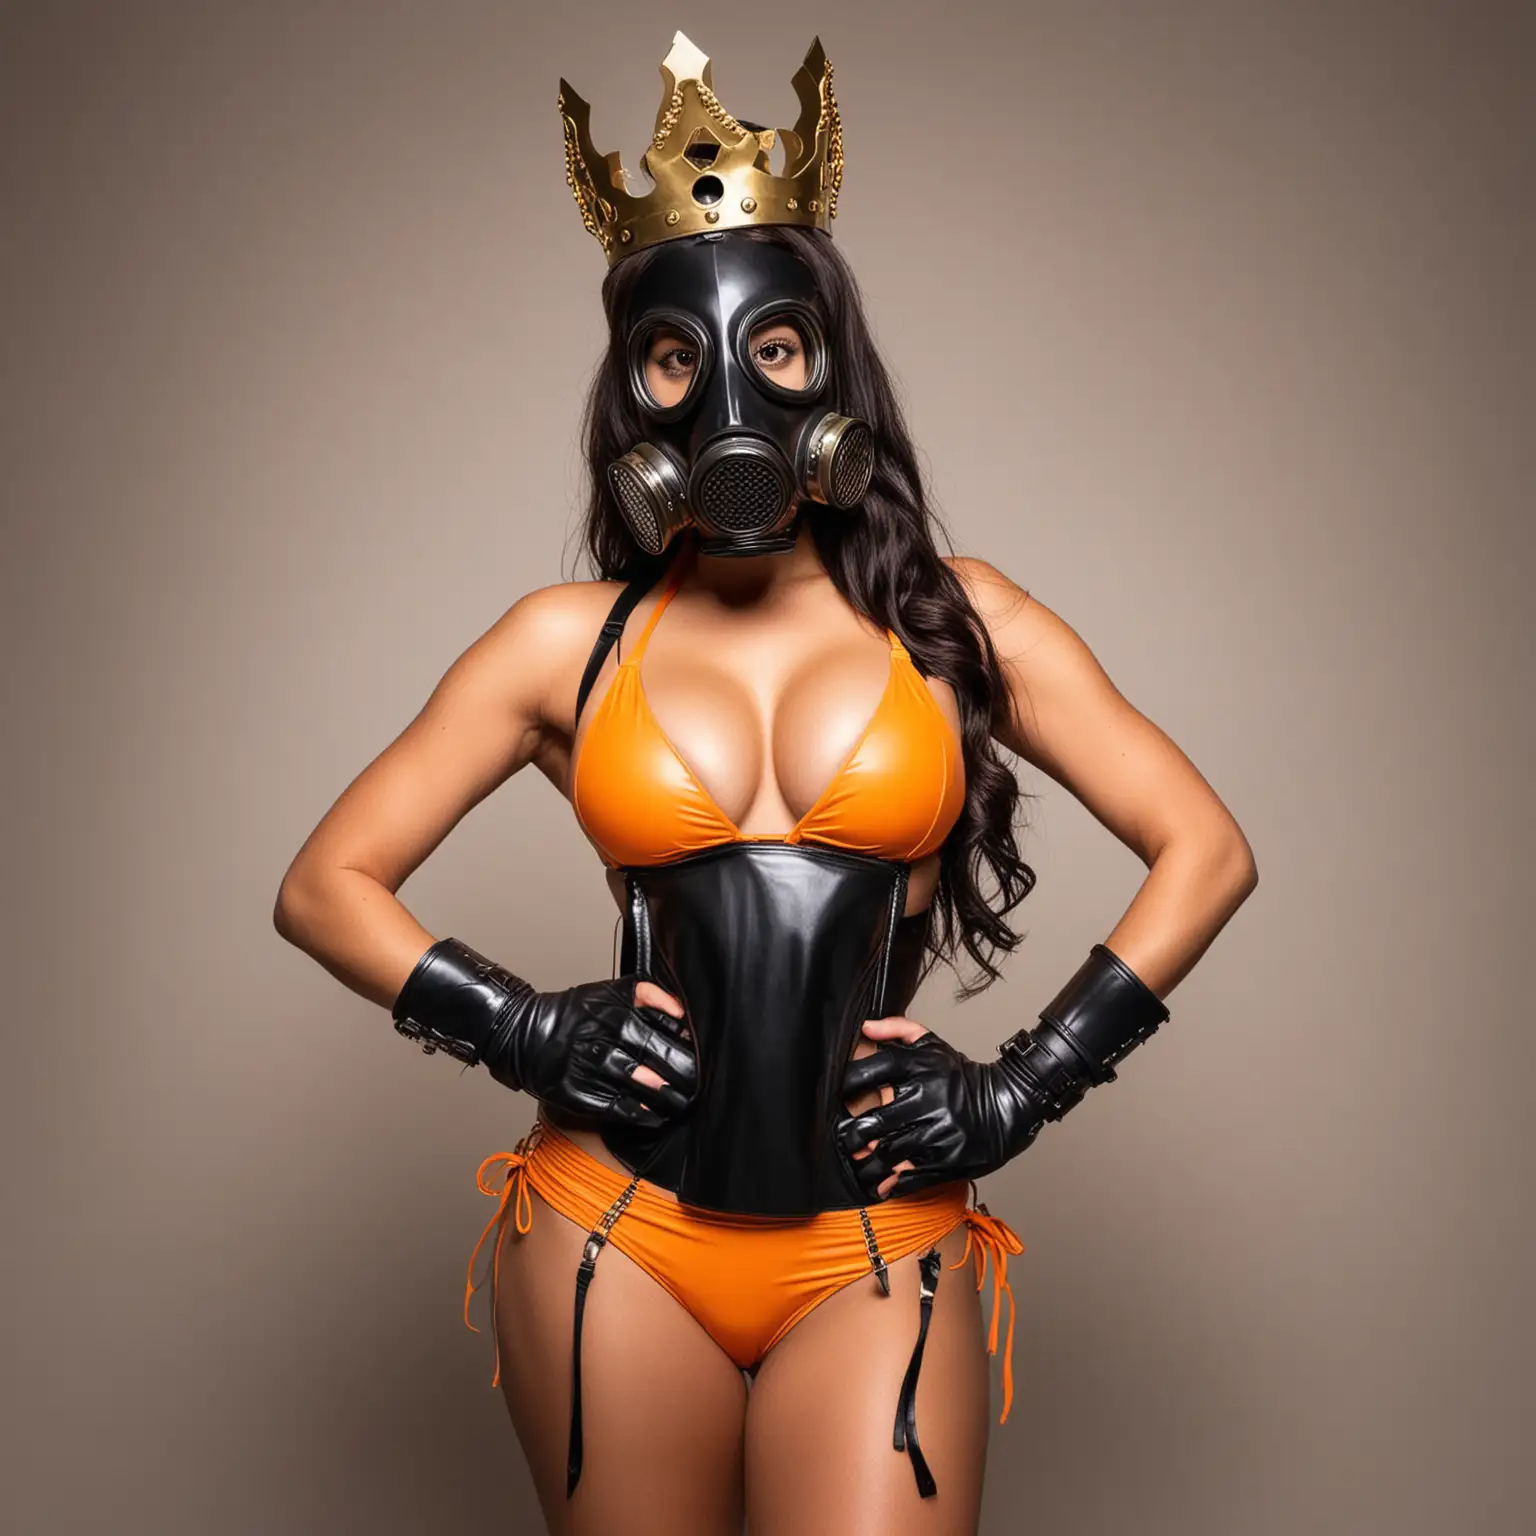 Latina Woman in Black Gas Mask and Gold Crown Wearing Orange Bikini